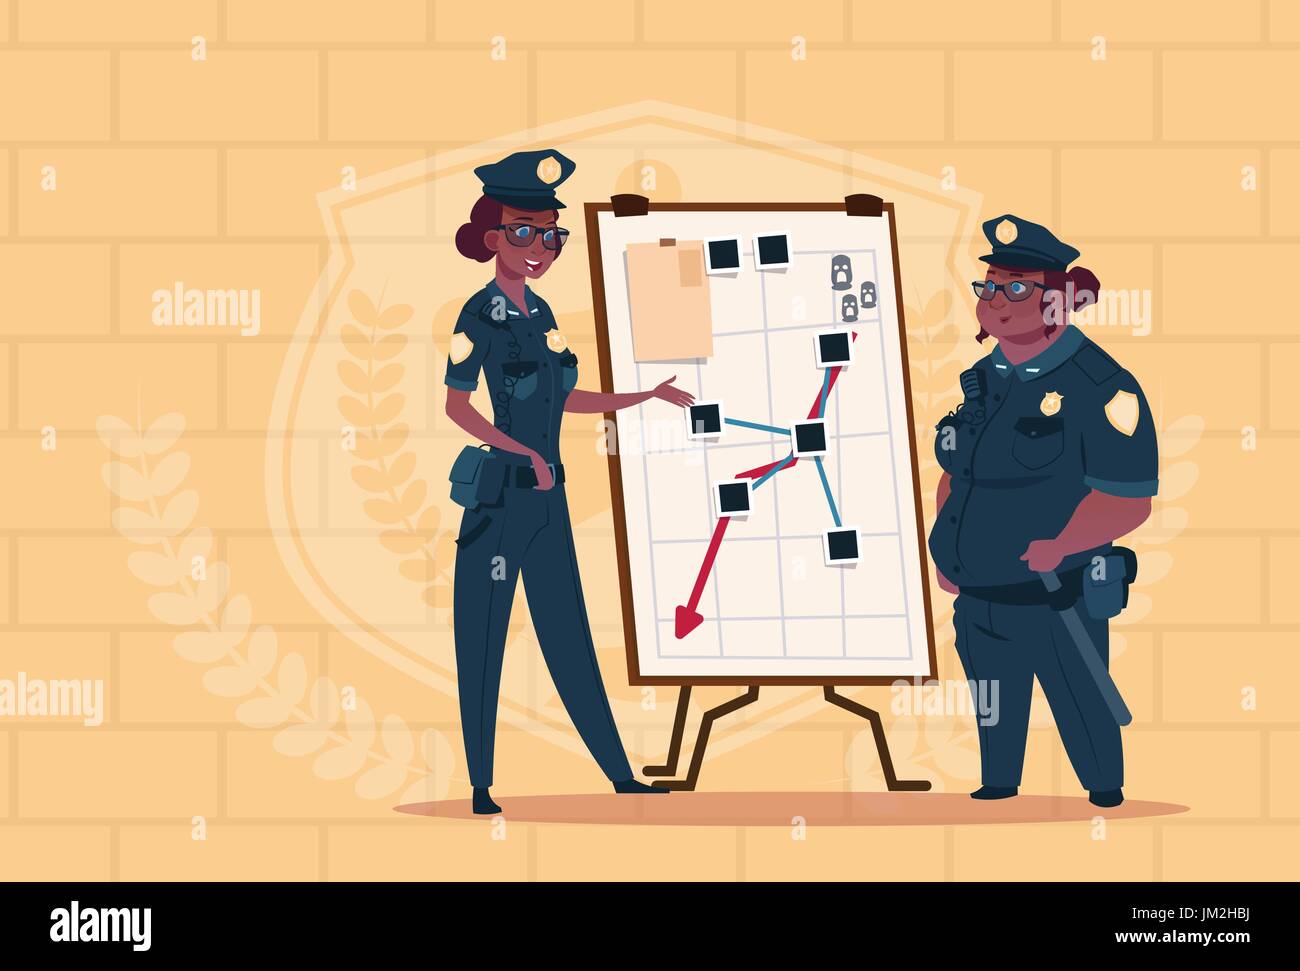 Deux femmes de la police américaine de l'Afrique de l'action de planification sur un tableau blanc les gardiennes en uniforme bleu sur fond brique Illustration de Vecteur